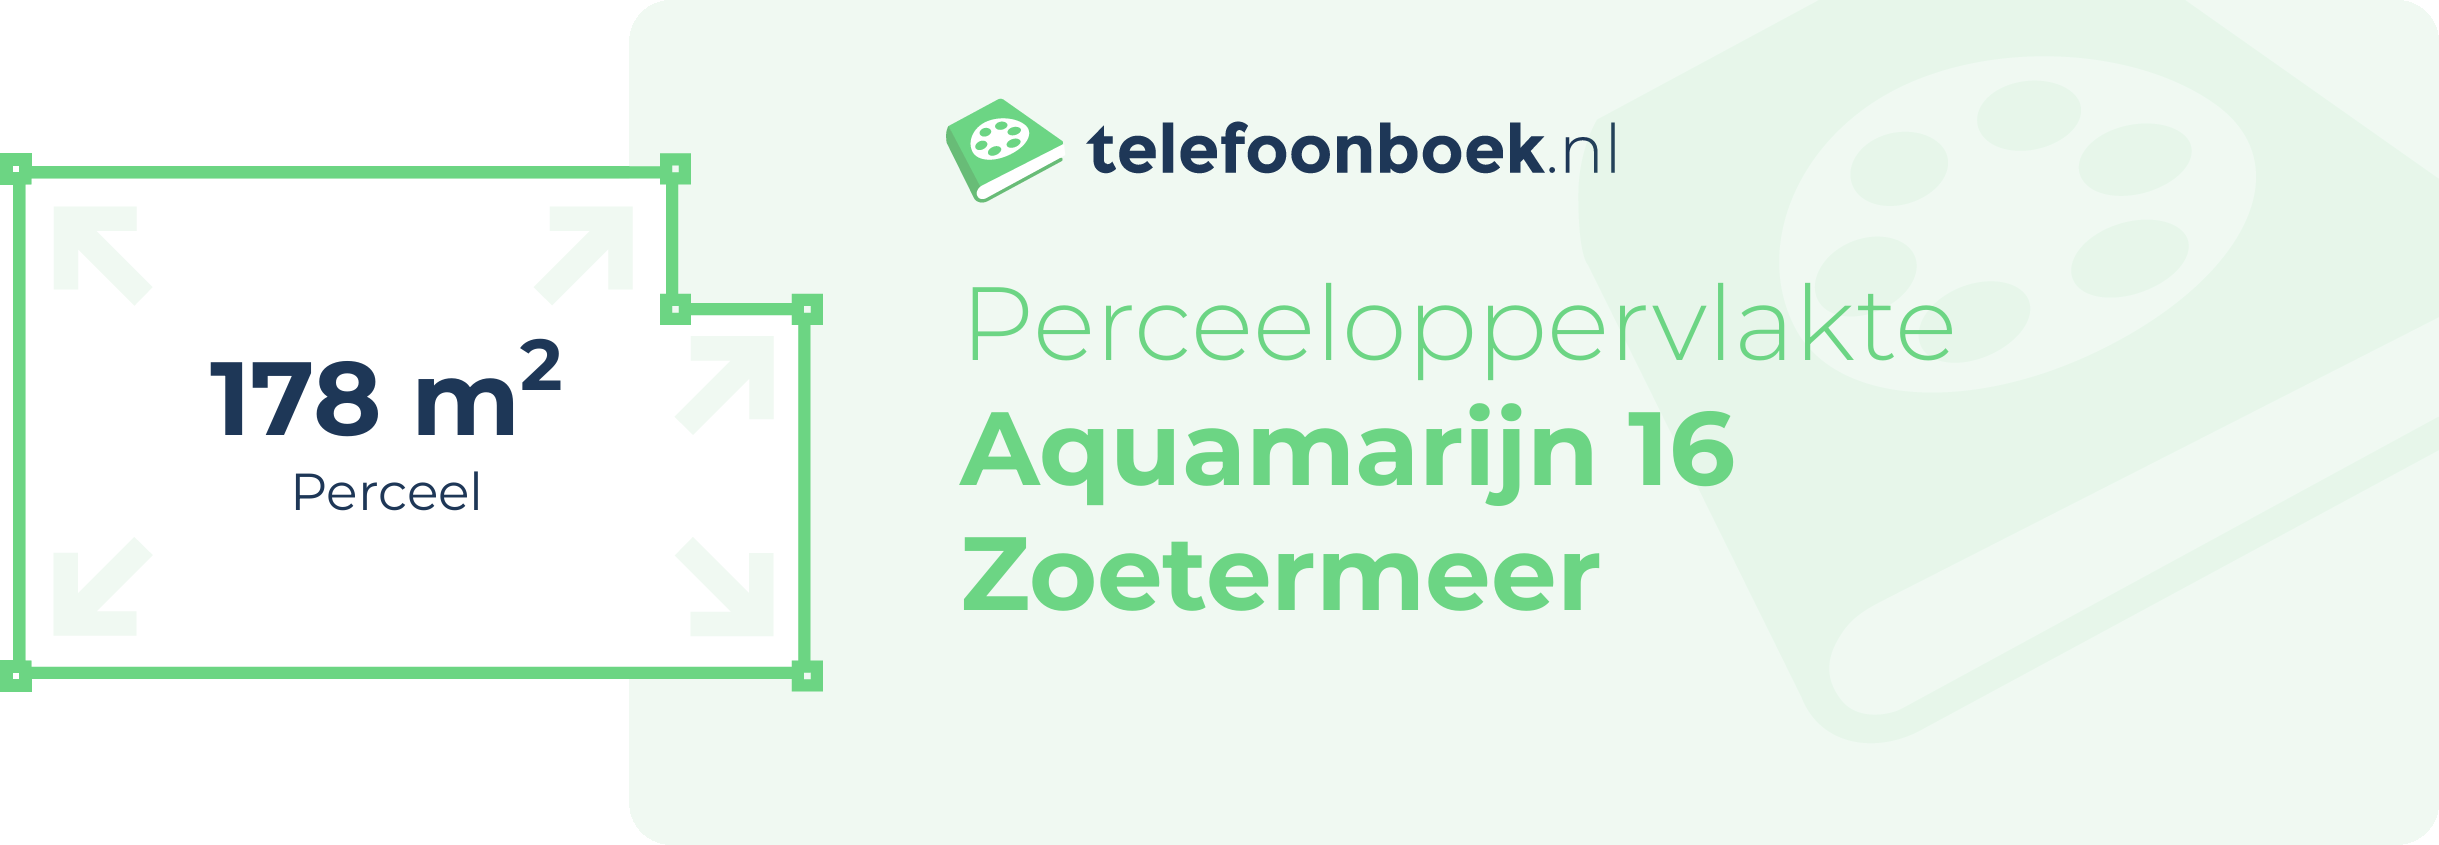 Perceeloppervlakte Aquamarijn 16 Zoetermeer